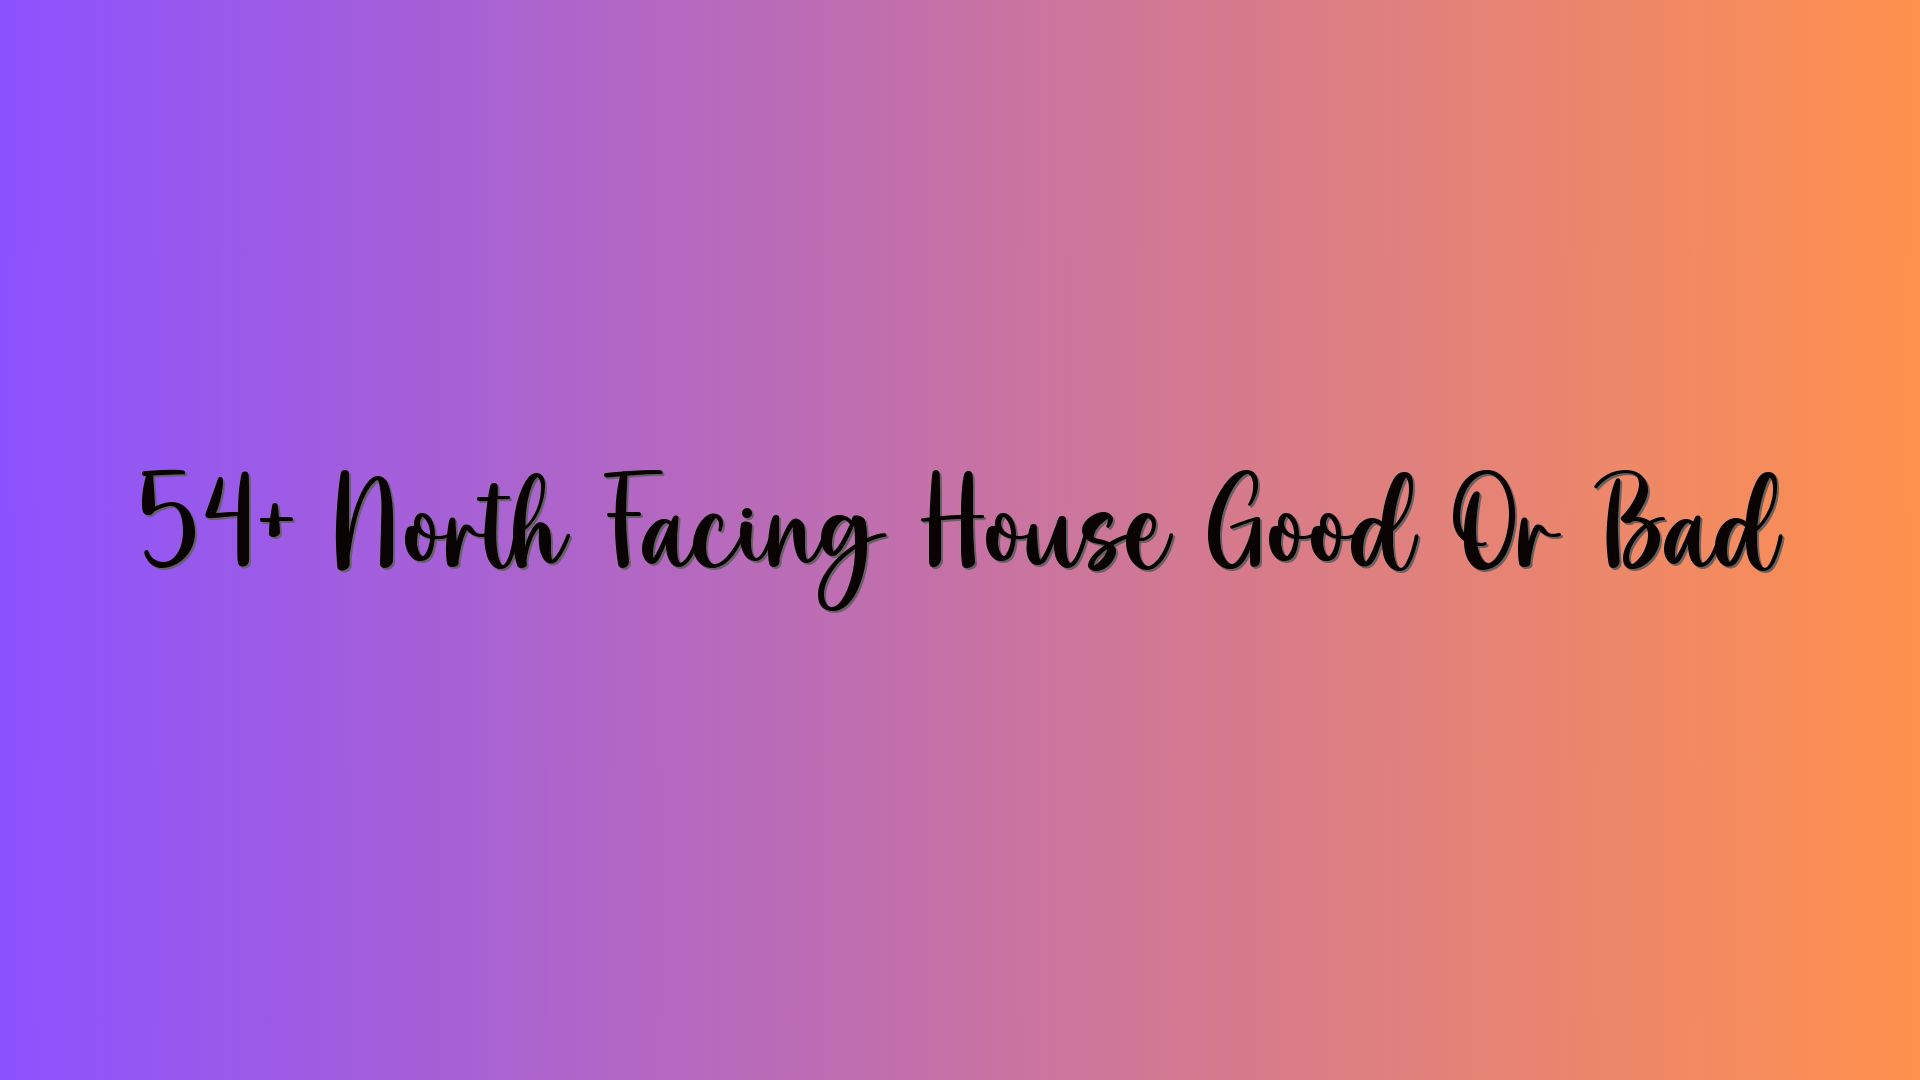 54+ North Facing House Good Or Bad